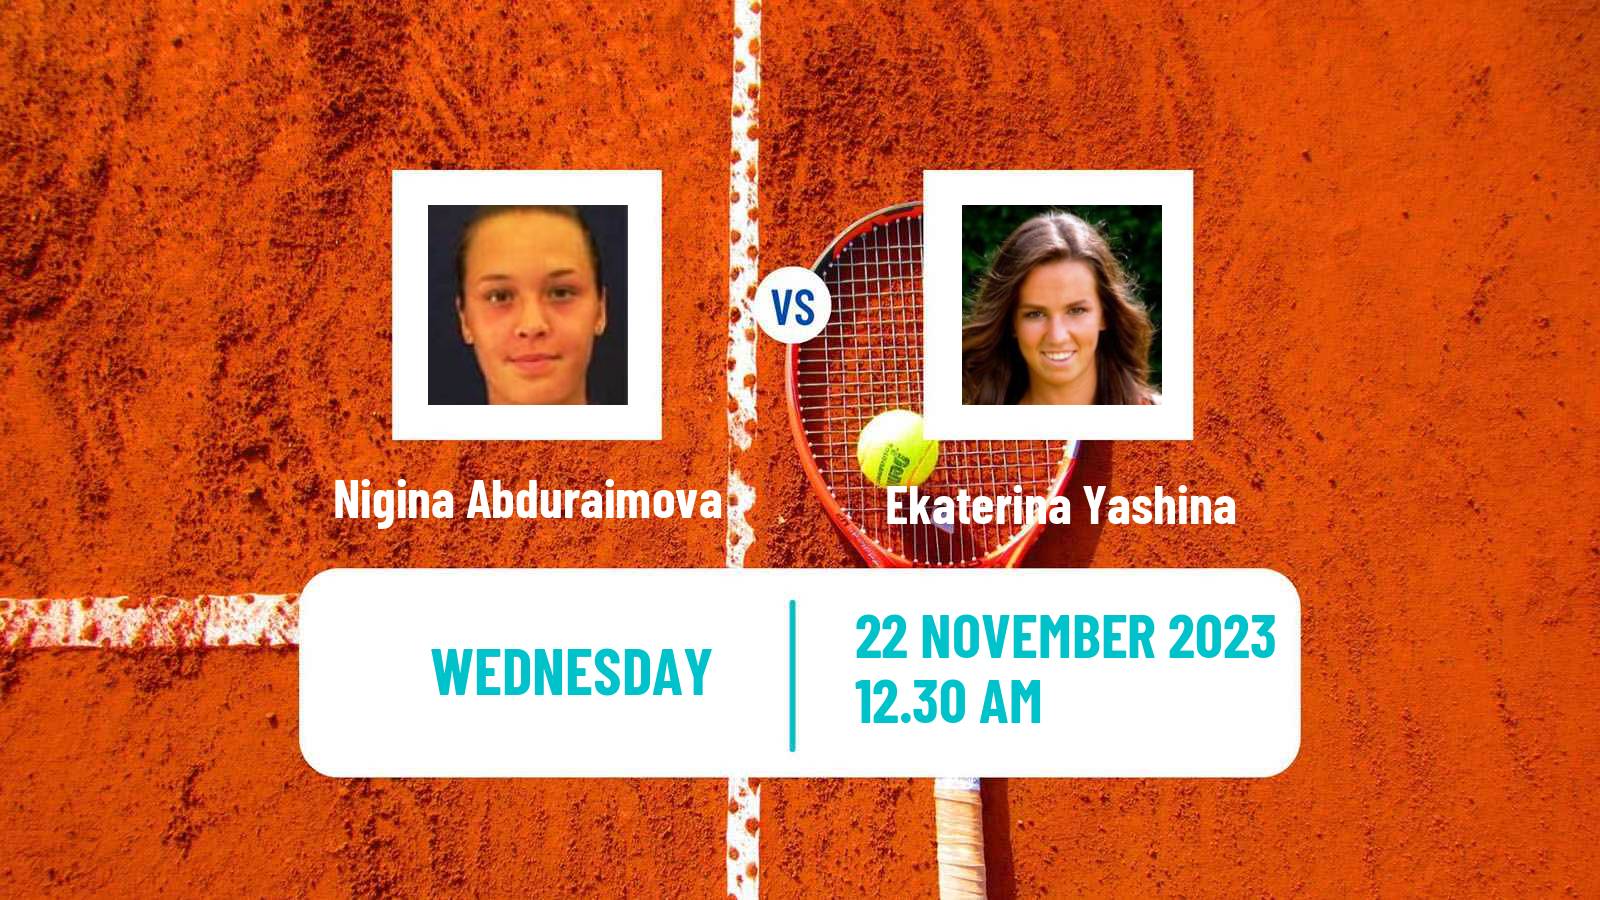 Tennis ITF W25 Bengaluru 2 Women Nigina Abduraimova - Ekaterina Yashina